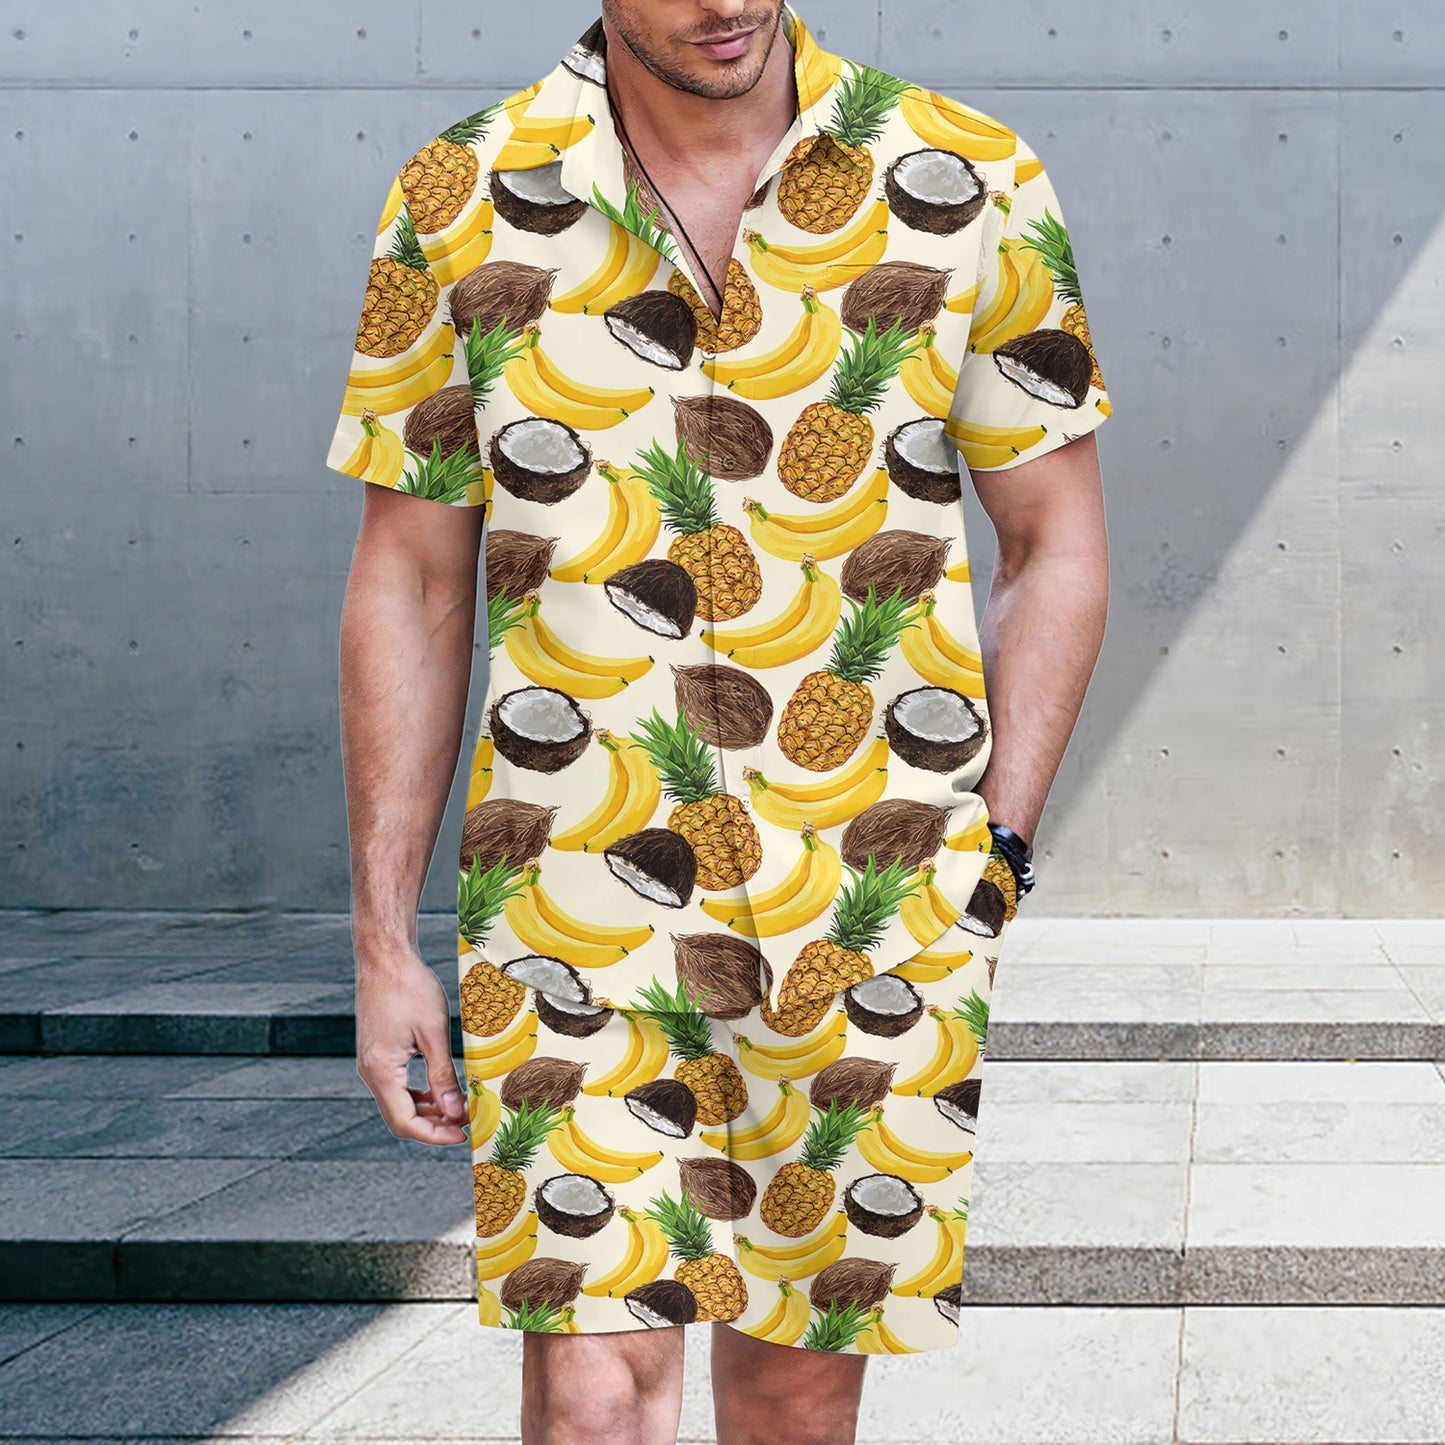 Funny Tropical Fruits Hawaiian Shirt And Shorts